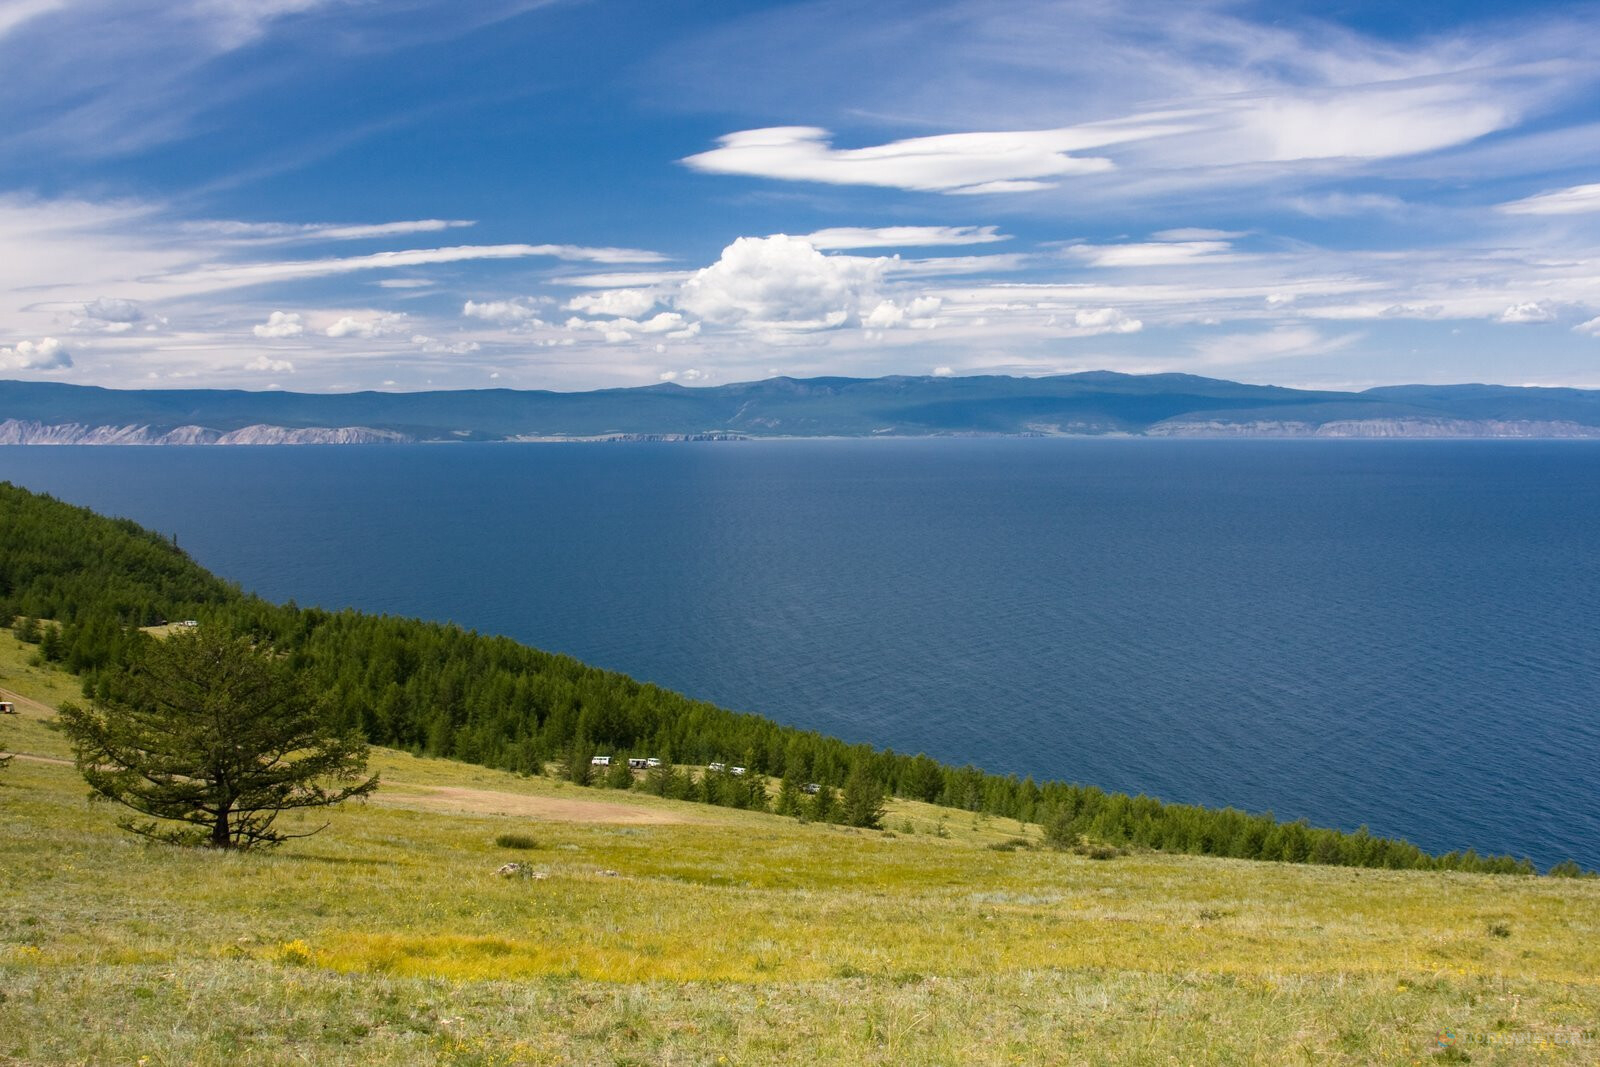 Запущен новый круизный тур по озеру Байкал на судне на воздушной подушке.